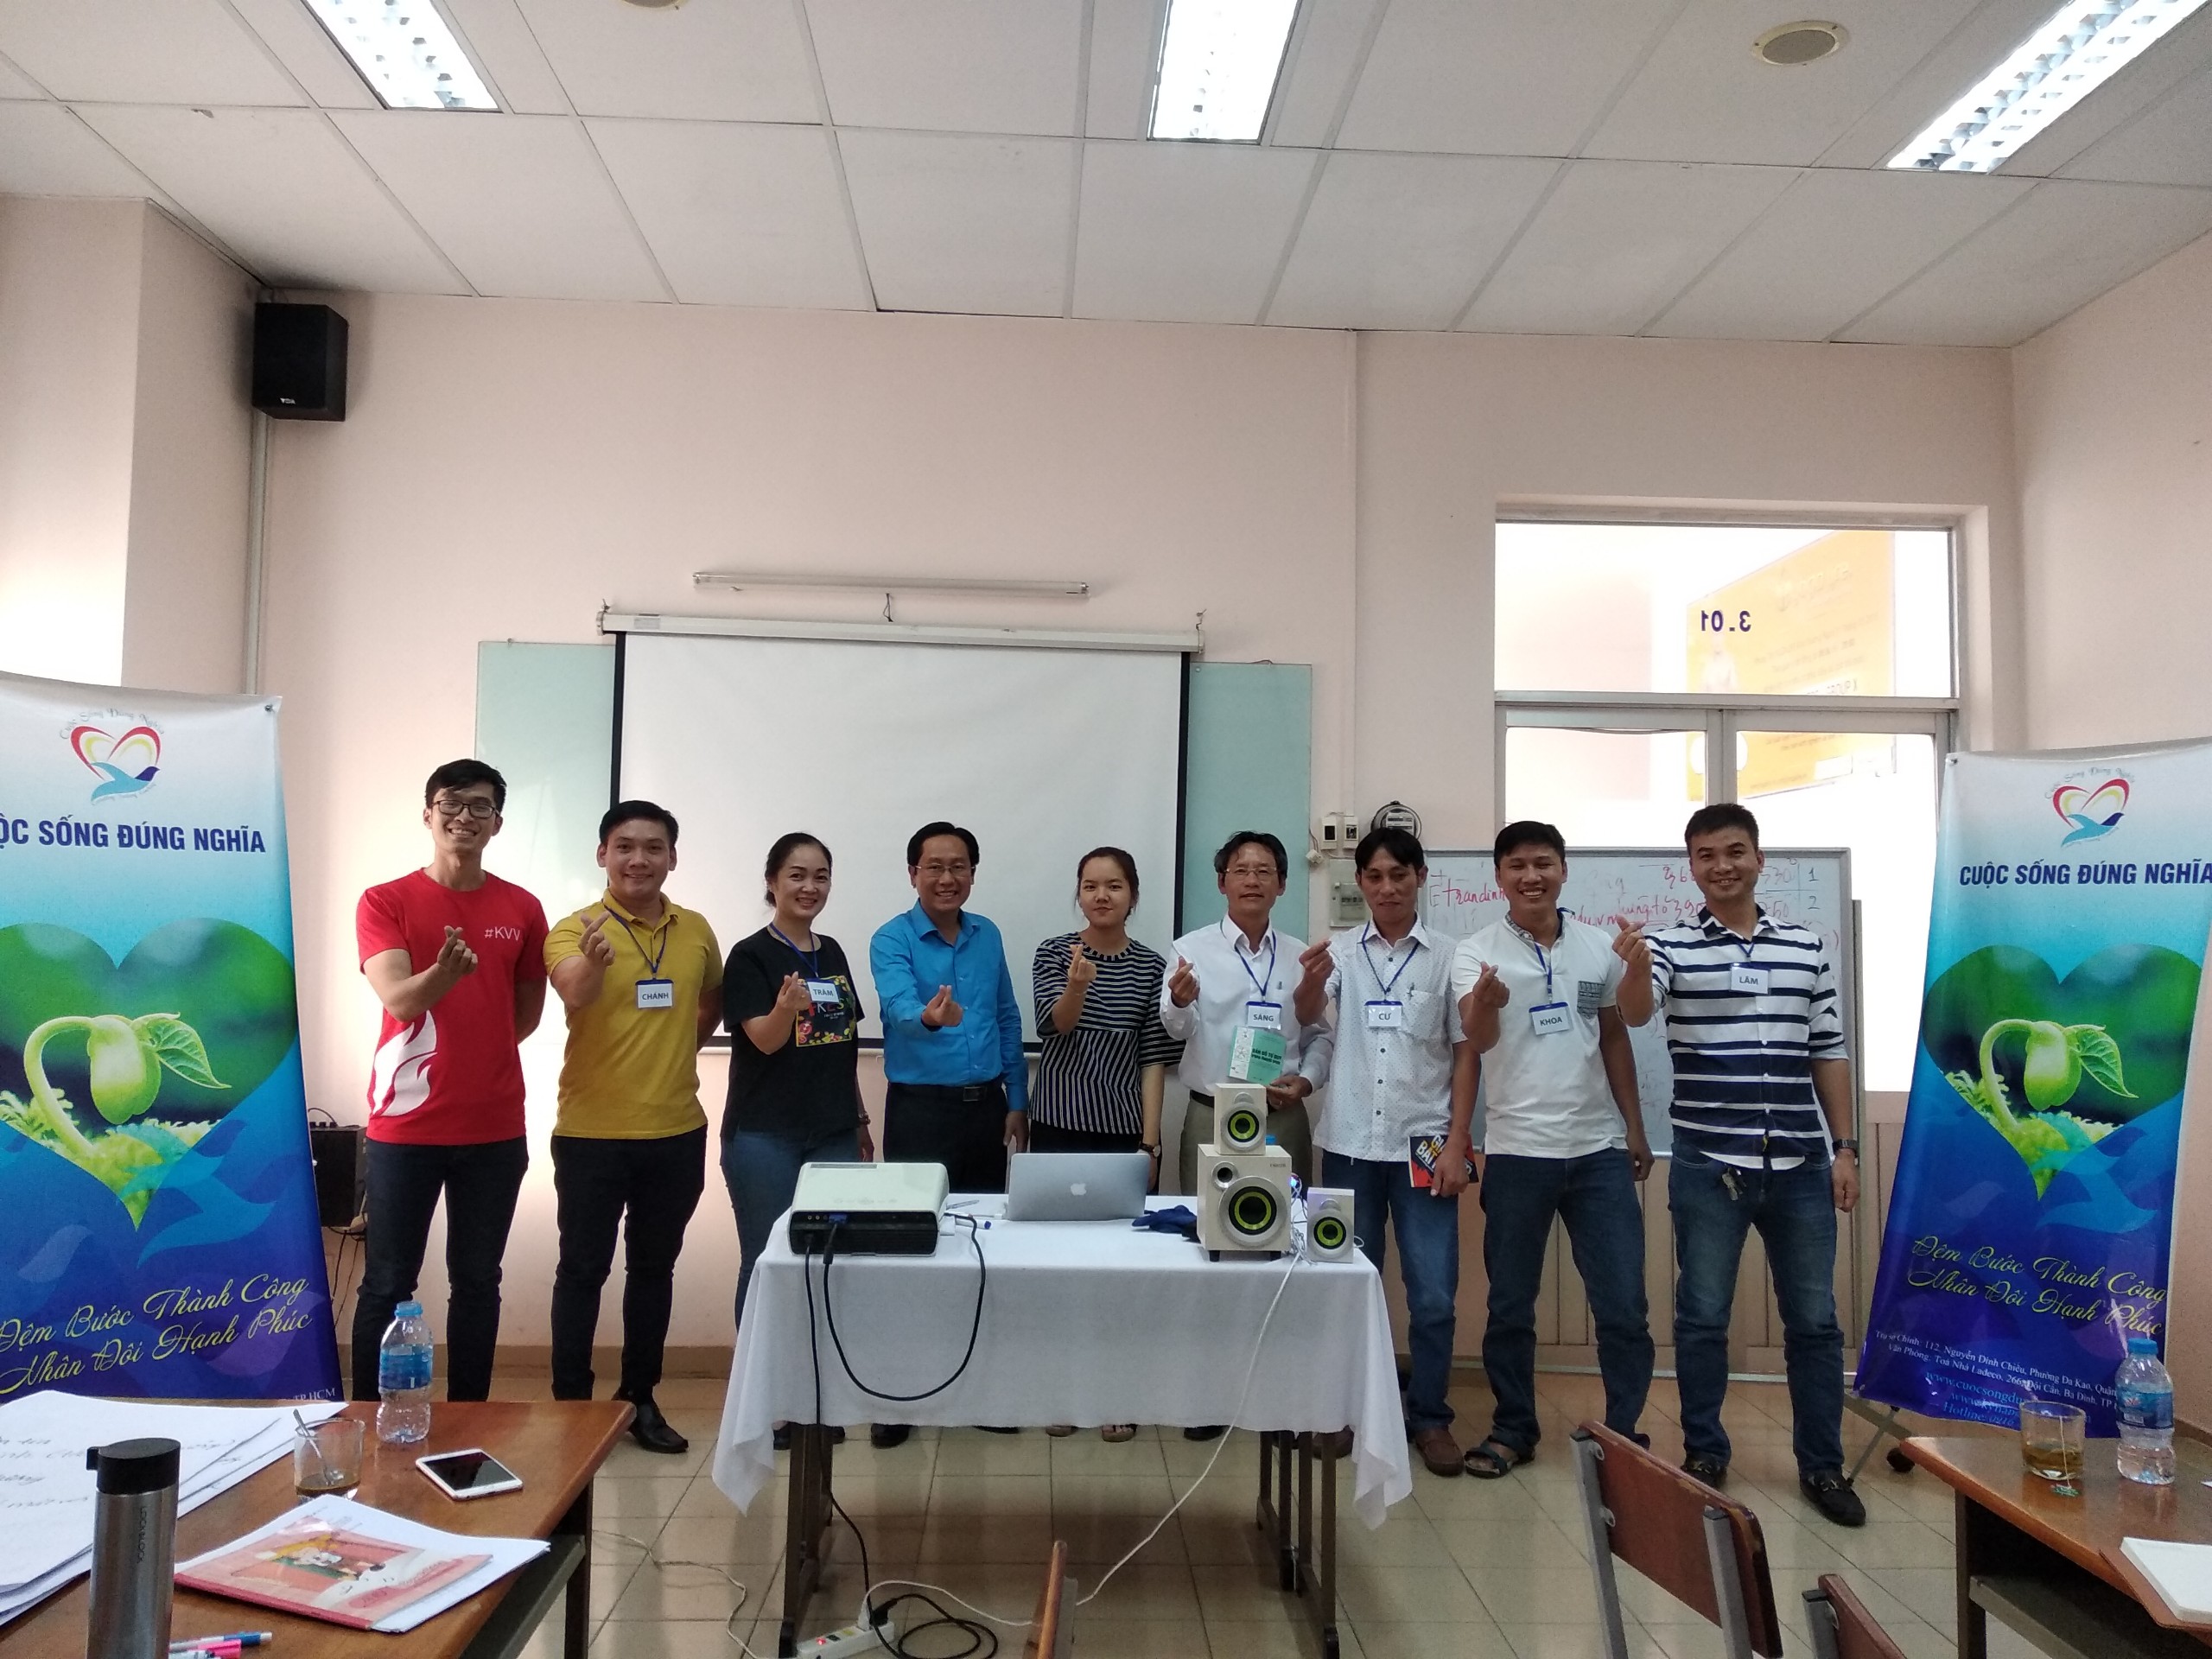 Đào tạo public: “Kỹ Năng Giao Tiếp và Thuyết Trình Thuyết Phục” tại Hồ Chí Minh tháng 2-2019